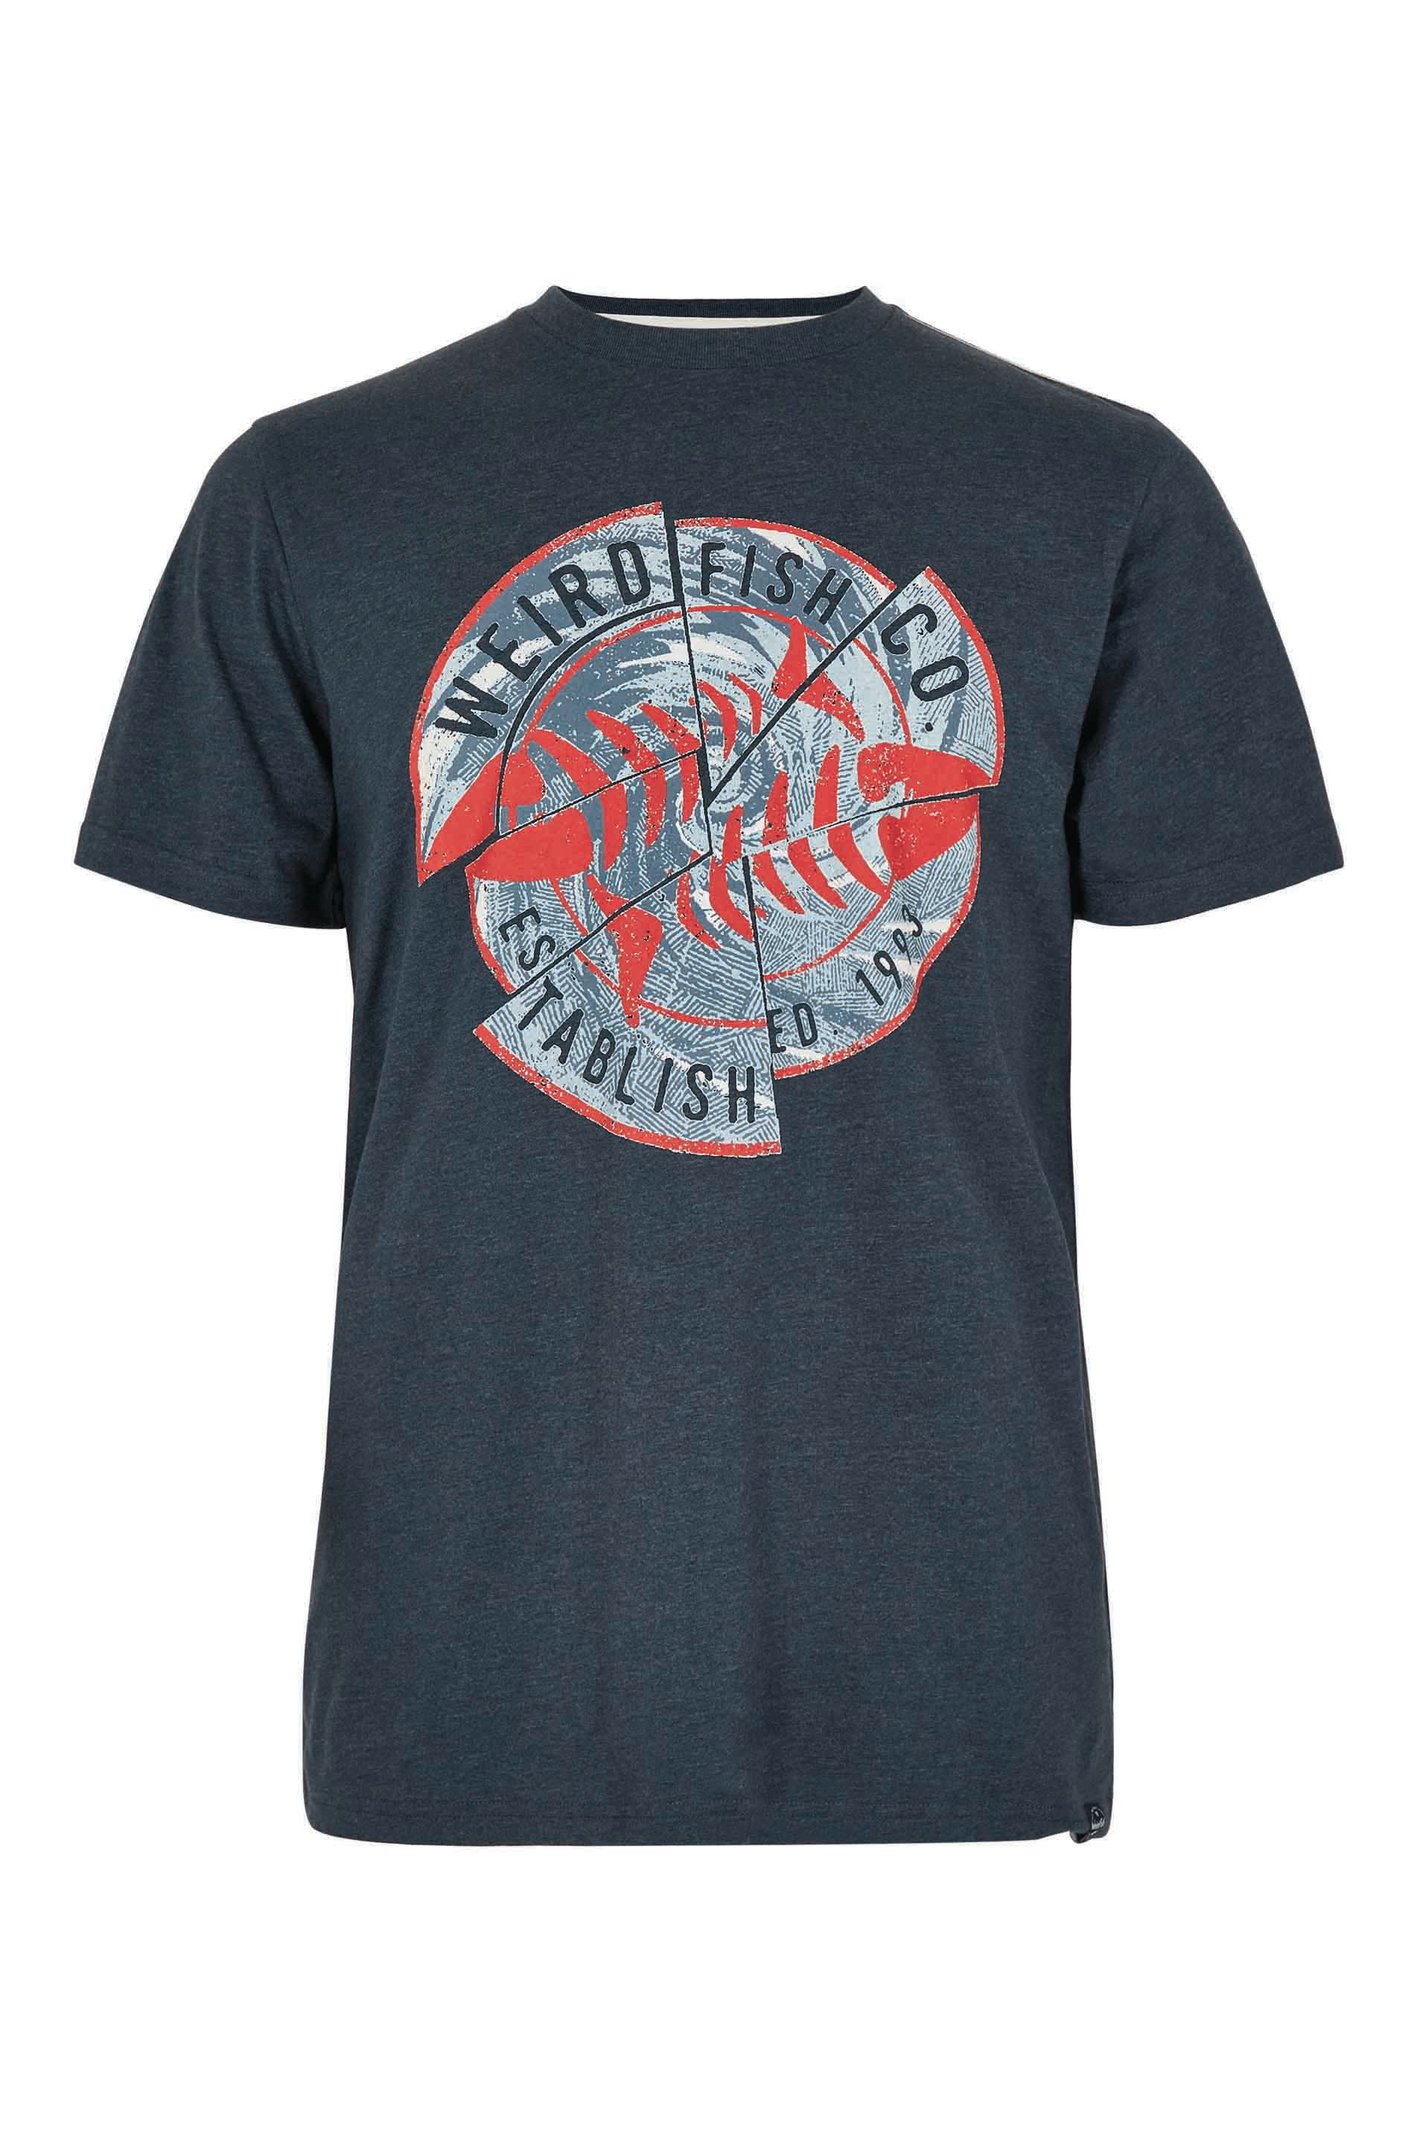 Weird Fish Vortex Eco Graphic T-Shirt Navy Size 5XL